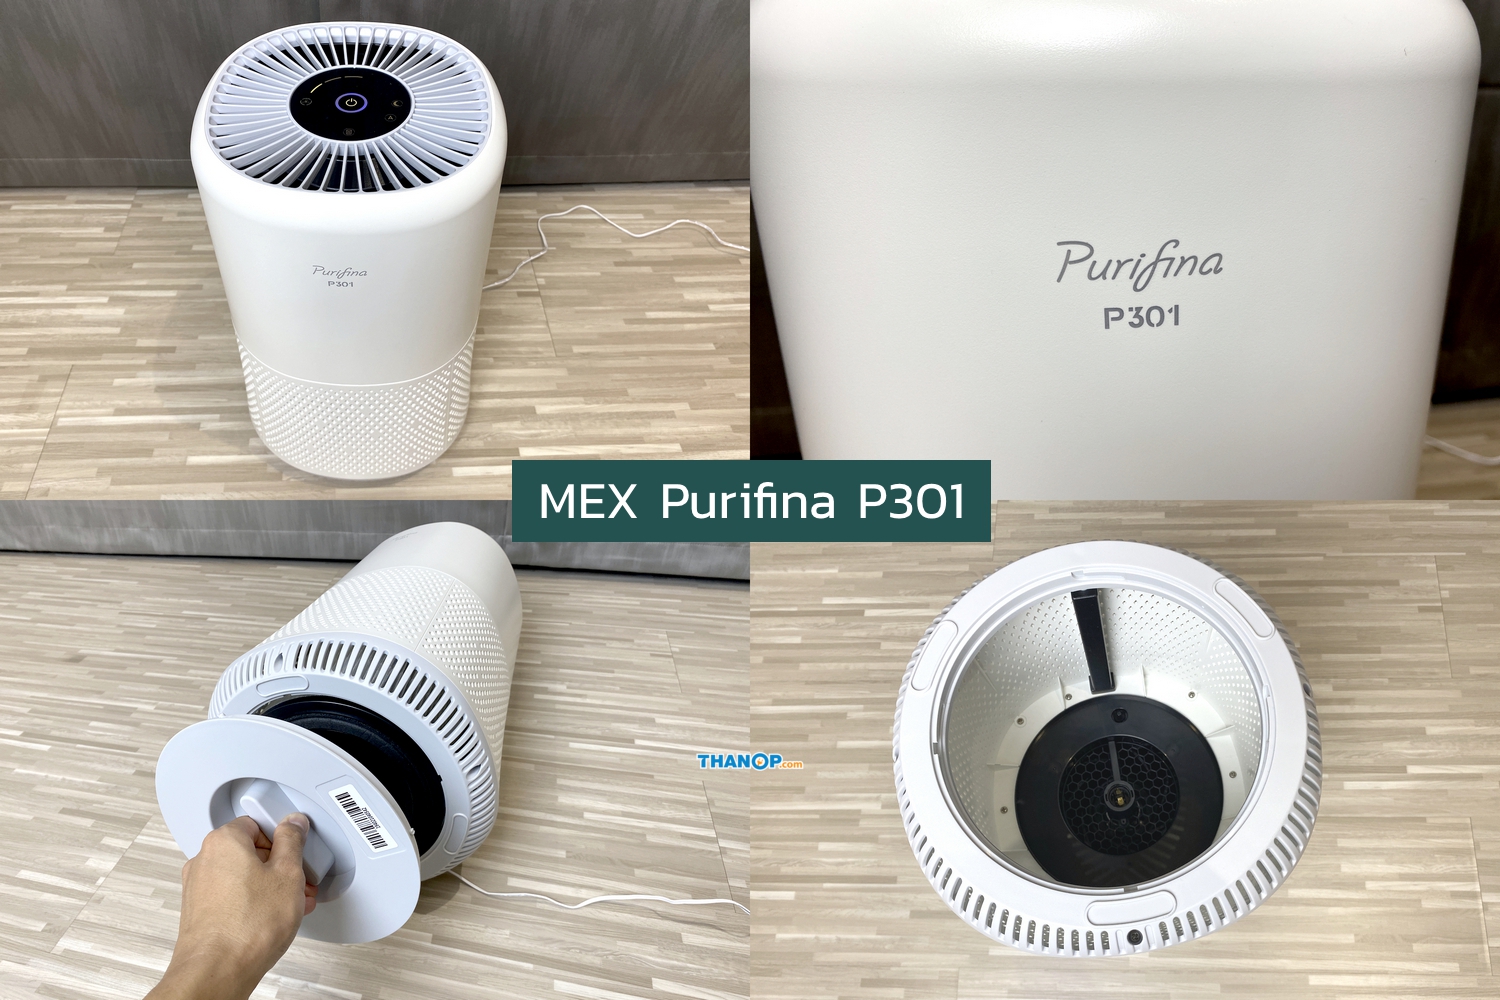 MEX Purifina P501 Working